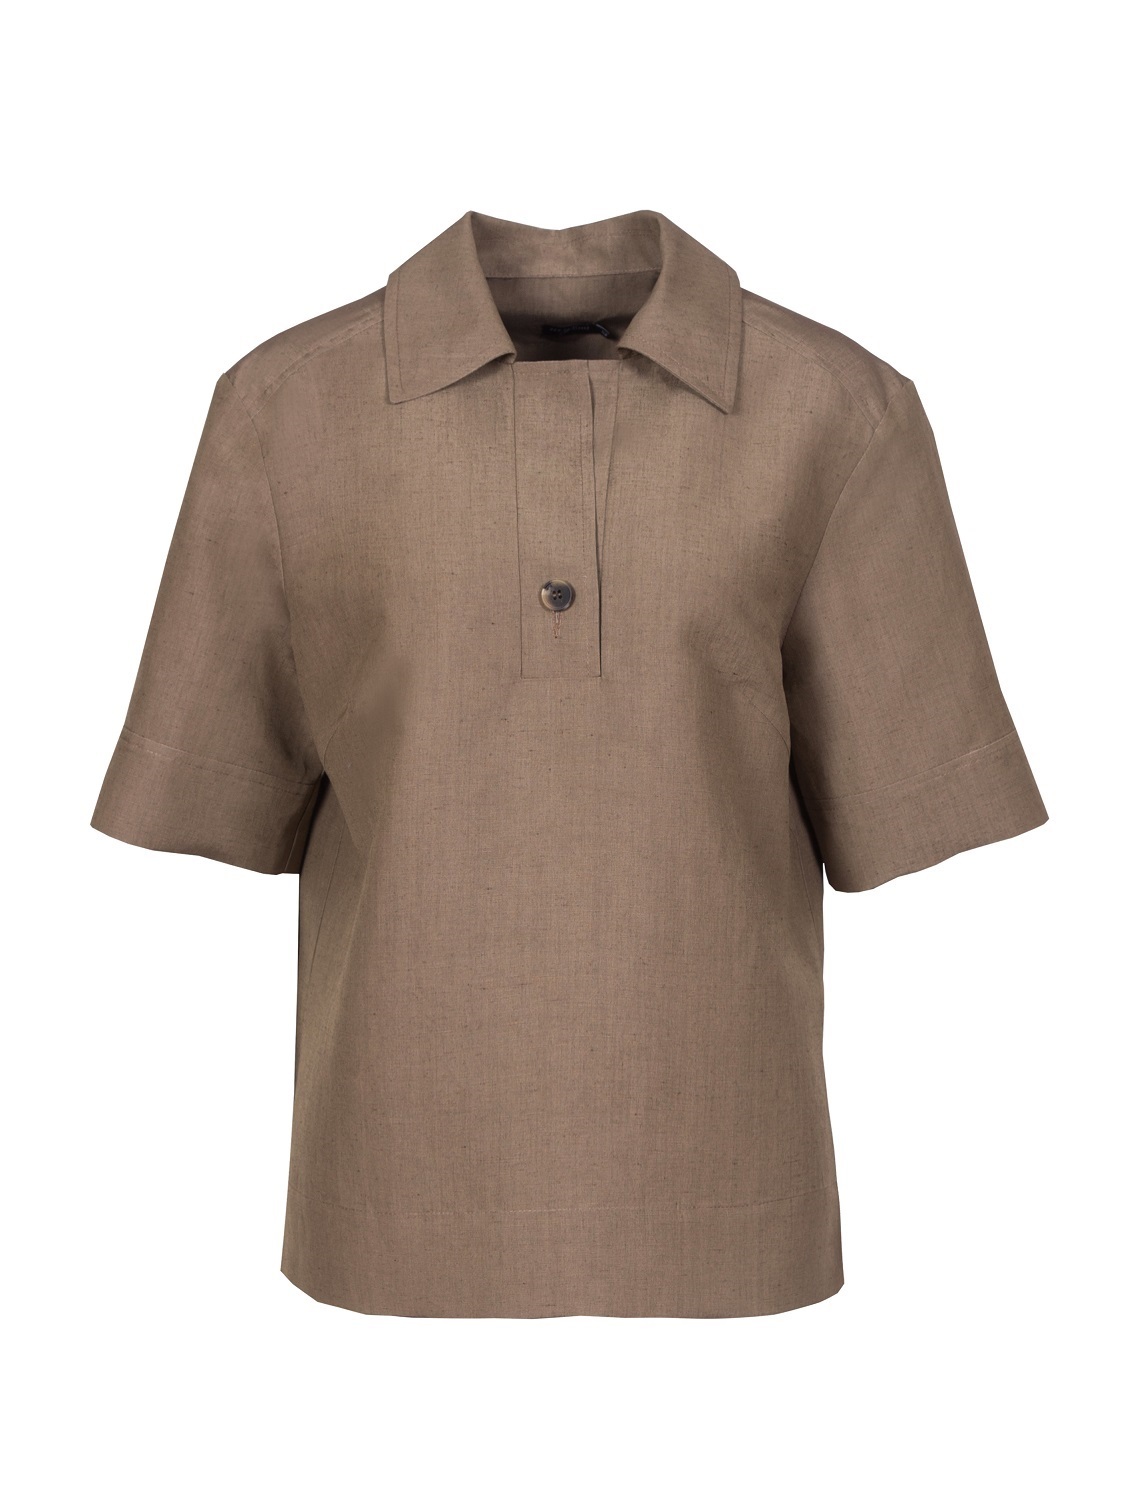 Рубашка-поло с коротким рукавом цвета «табак»